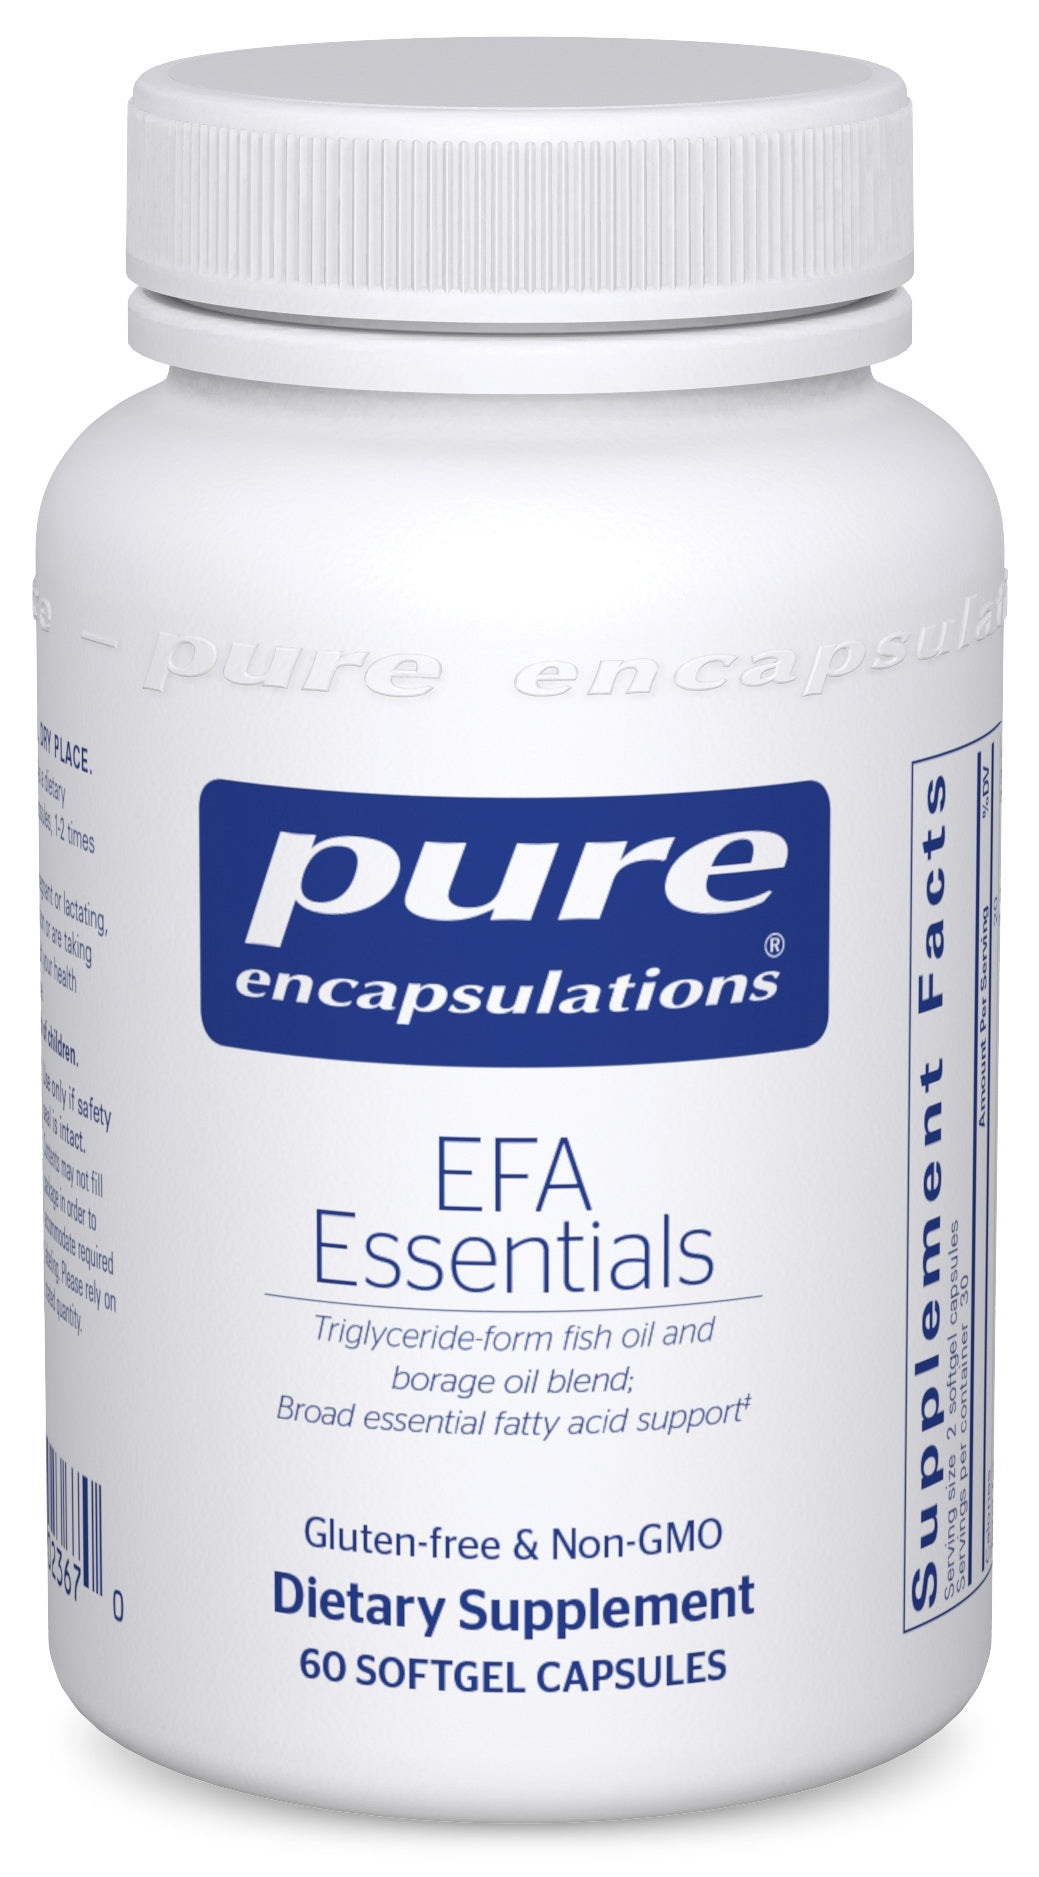 EFA Essentials